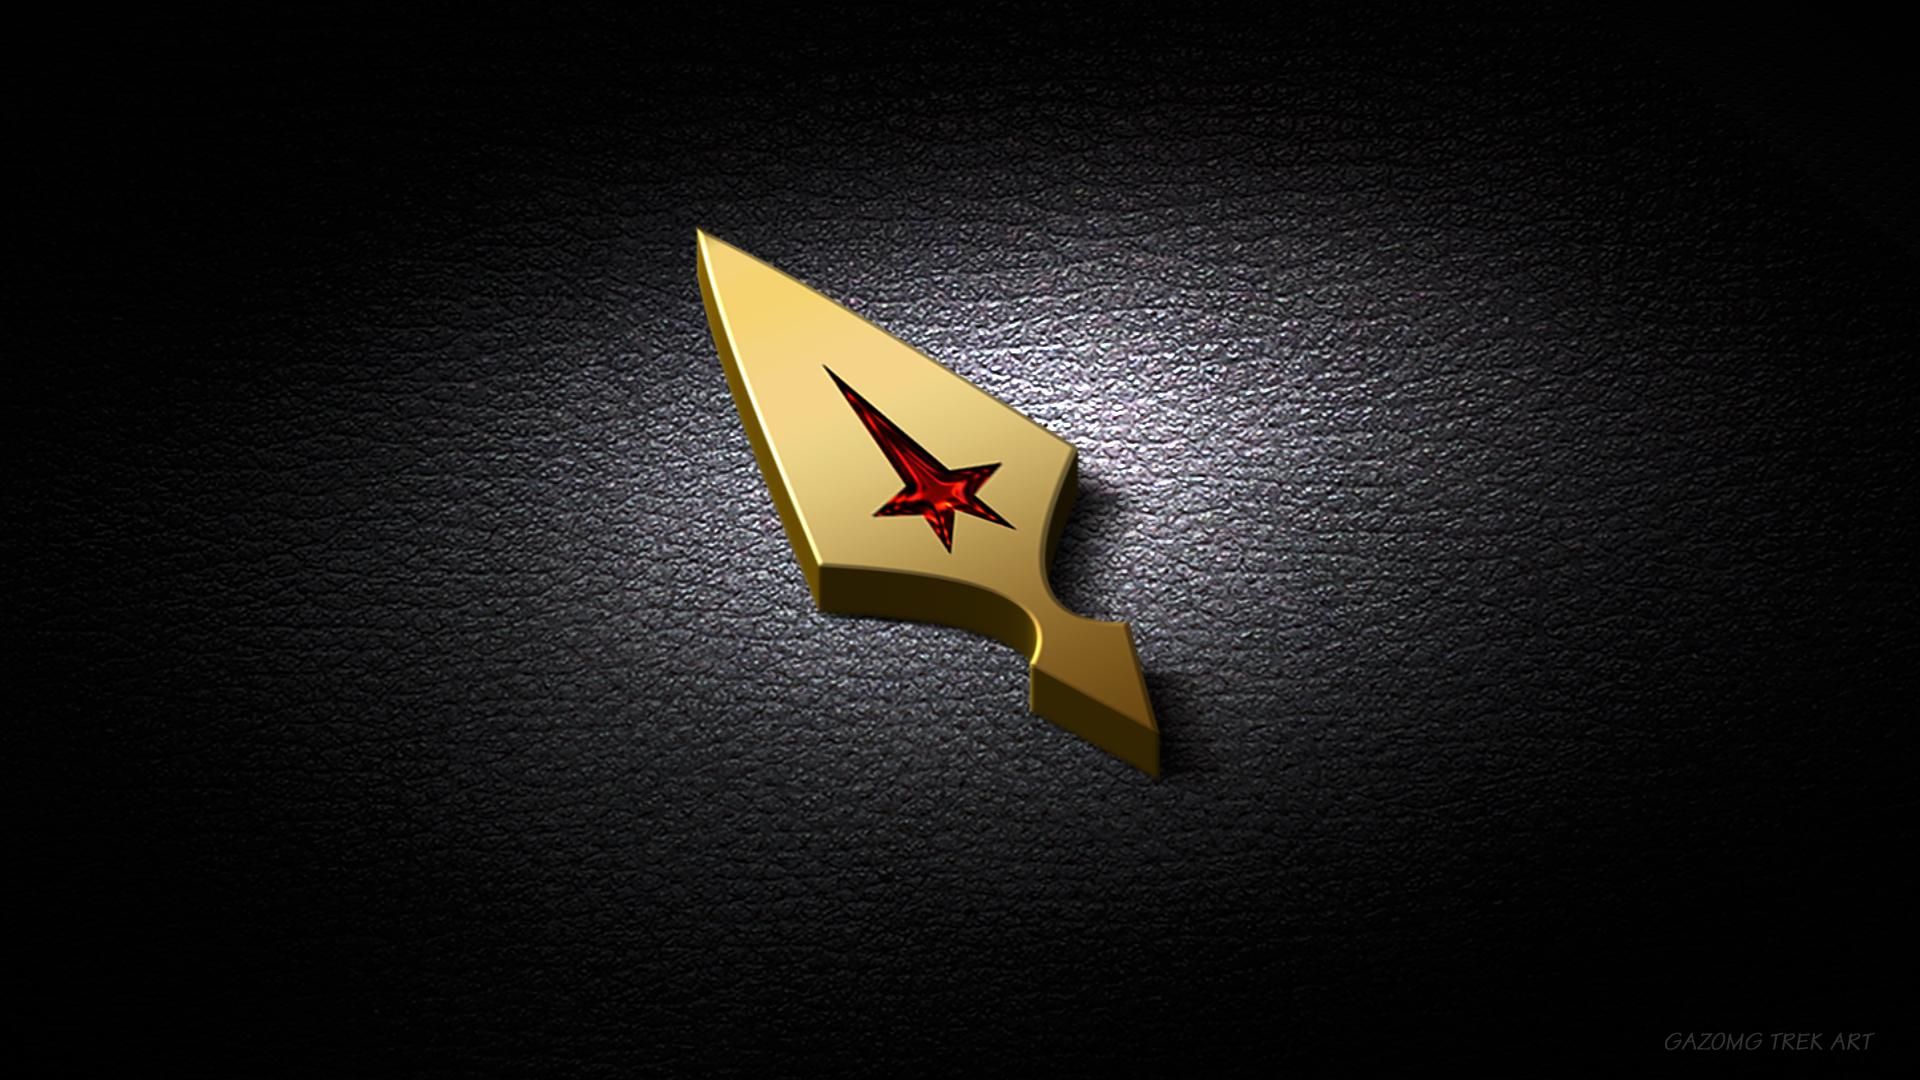 Star Trek Axanar Logo Wallpaper by gazomg on DeviantArt